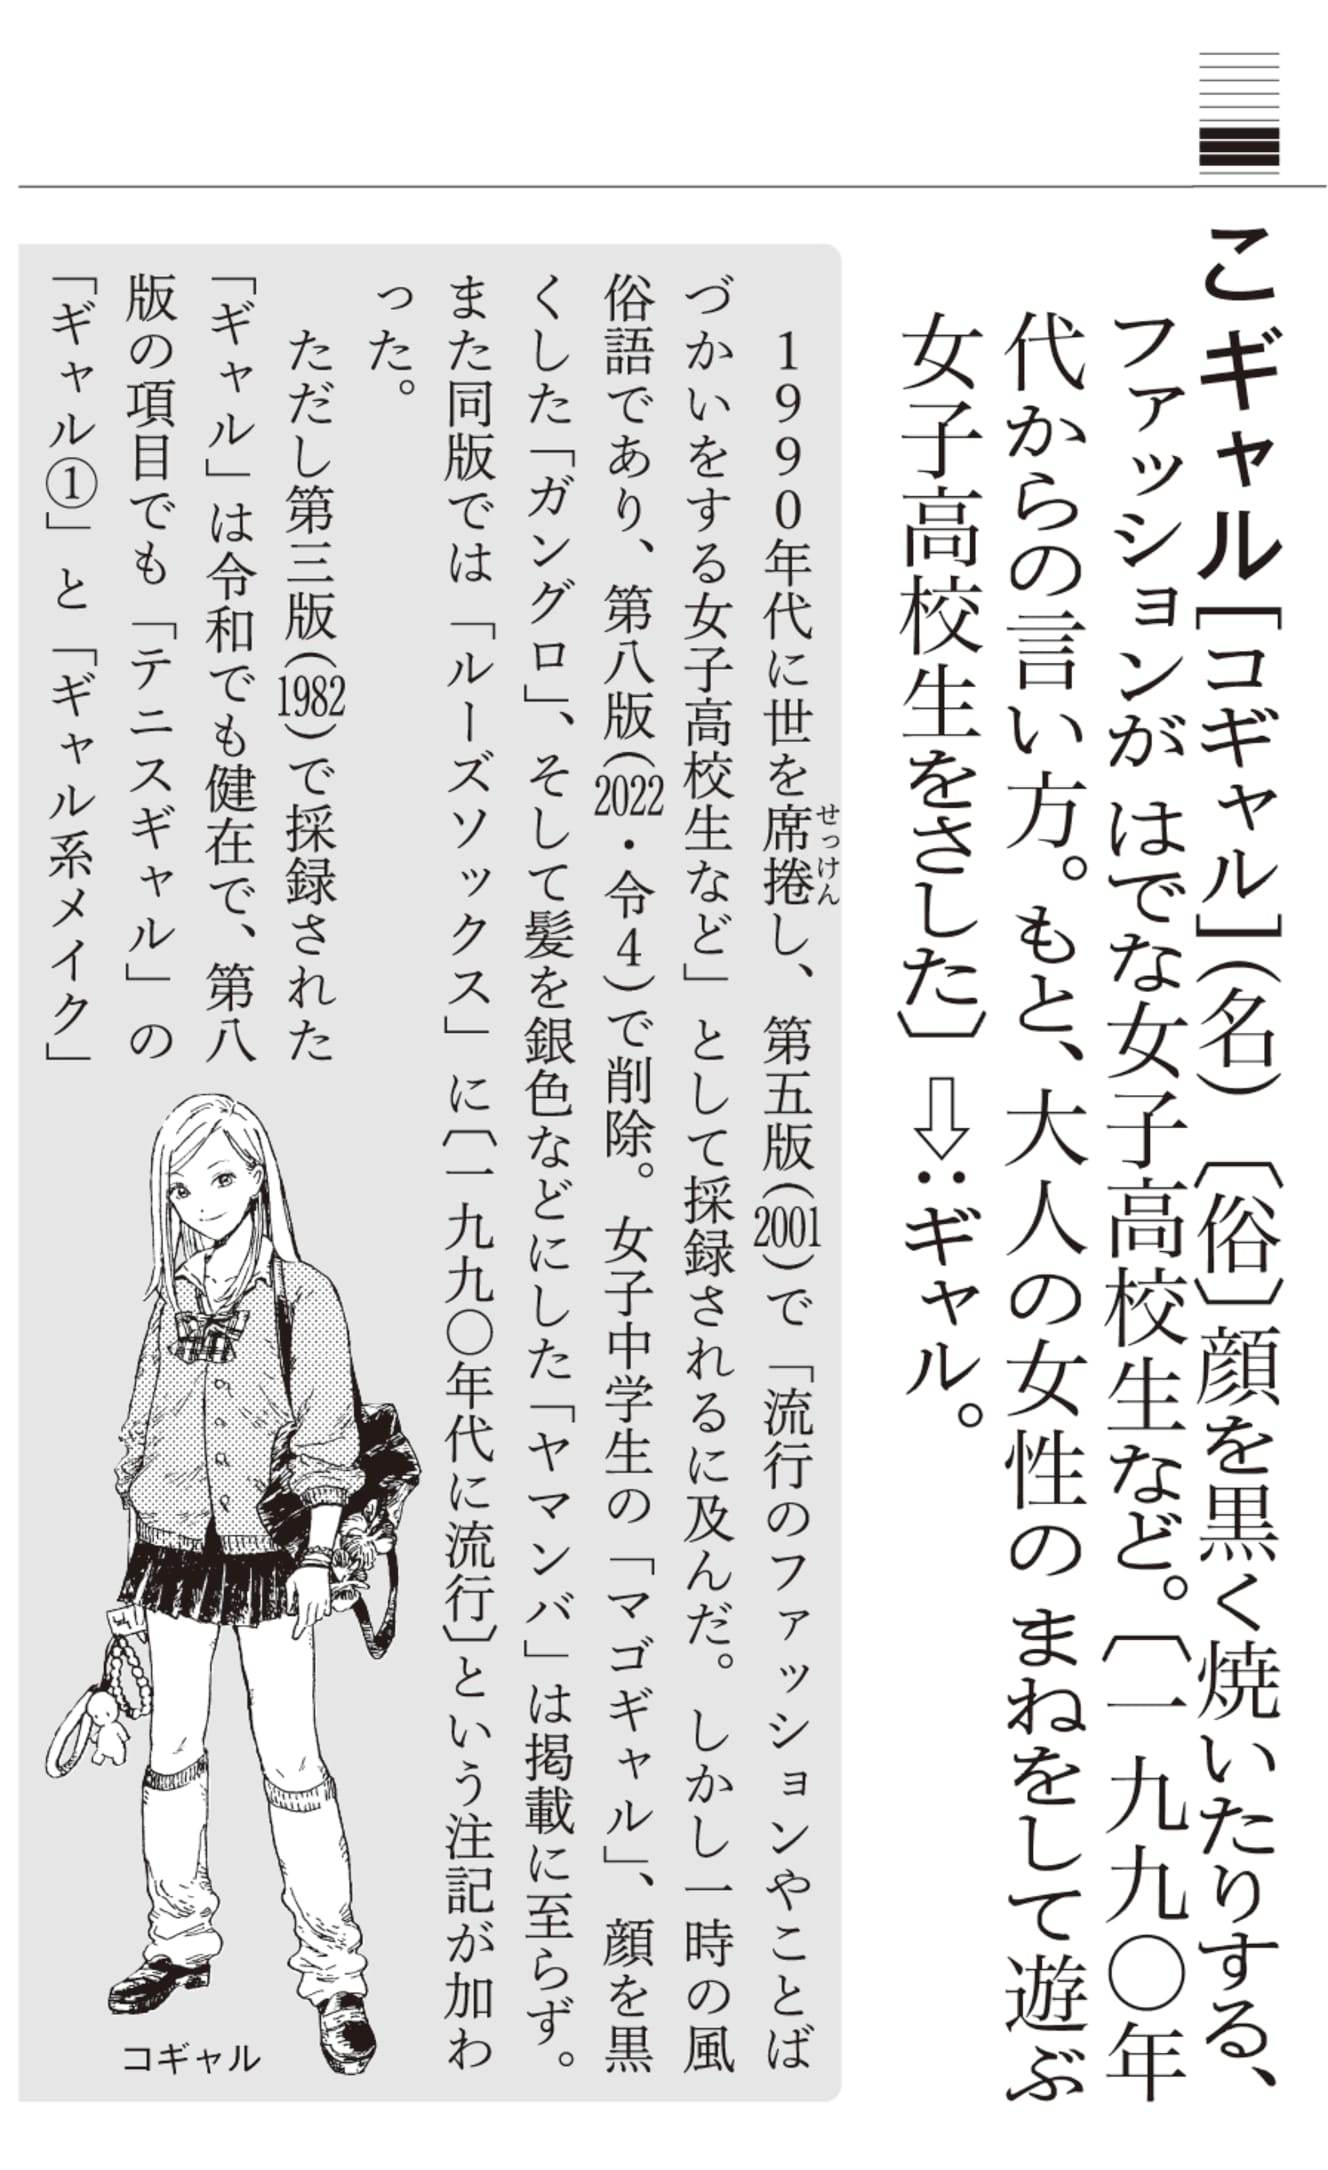 ’21年末に発売された『三省堂国語辞典』第八版から“削除”された「コギャル」